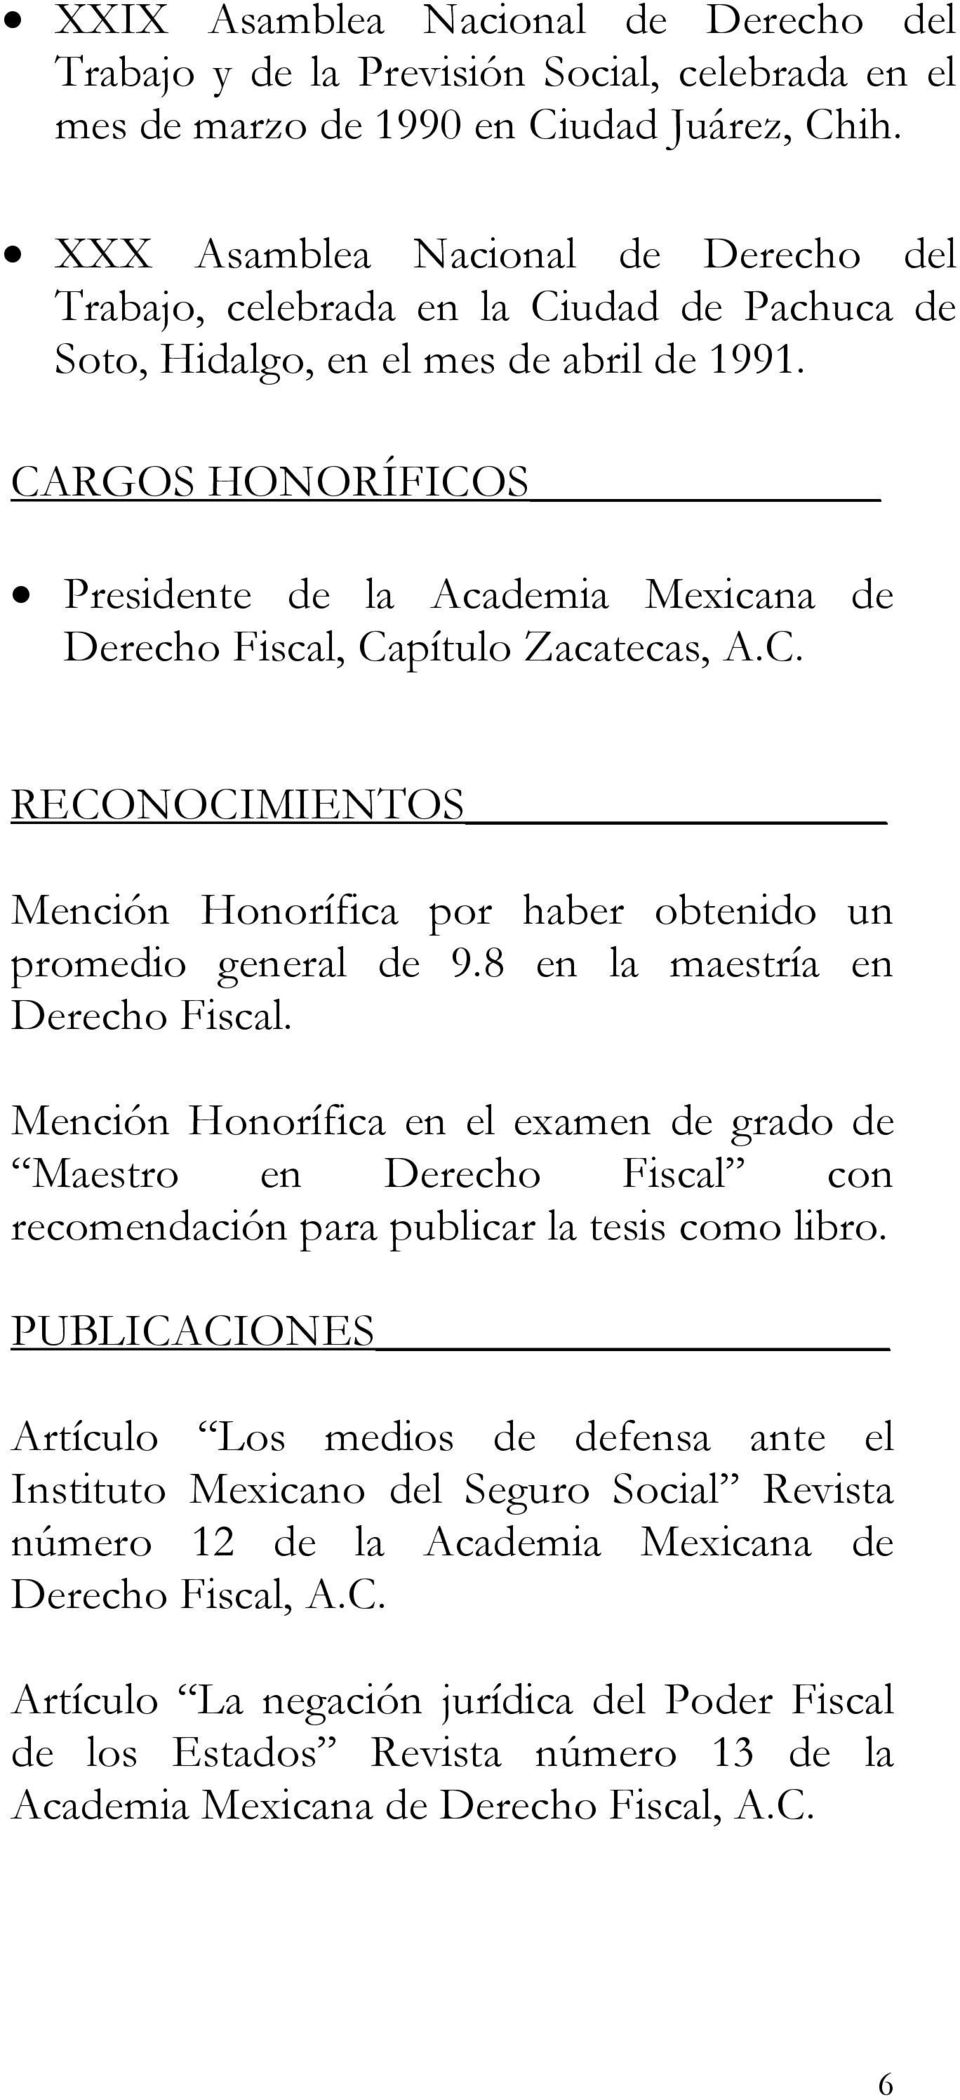 CARGOS HONORÍFICOS Presidente de la Academia Mexicana de Derecho Fiscal, Capítulo Zacatecas, A.C. RECONOCIMIENTOS Mención Honorífica por haber obtenido un promedio general de 9.